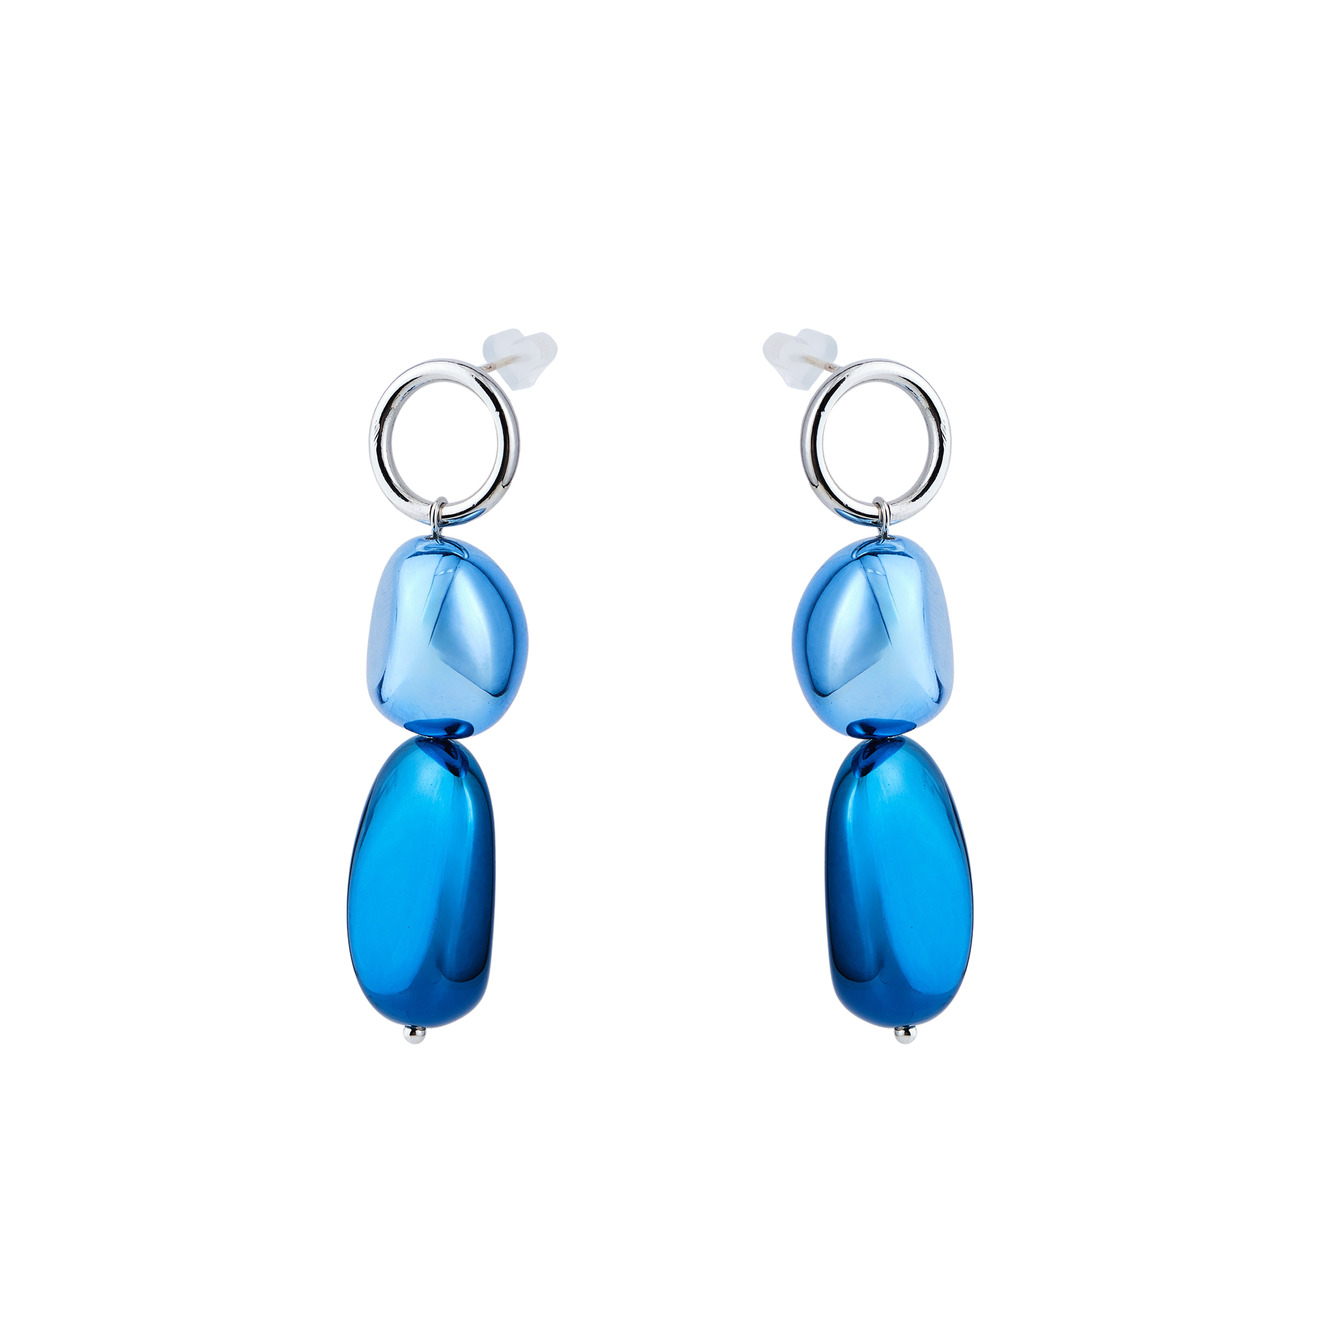 Free Form Jewelry Серебристые серьги с синим камнем цена и фото